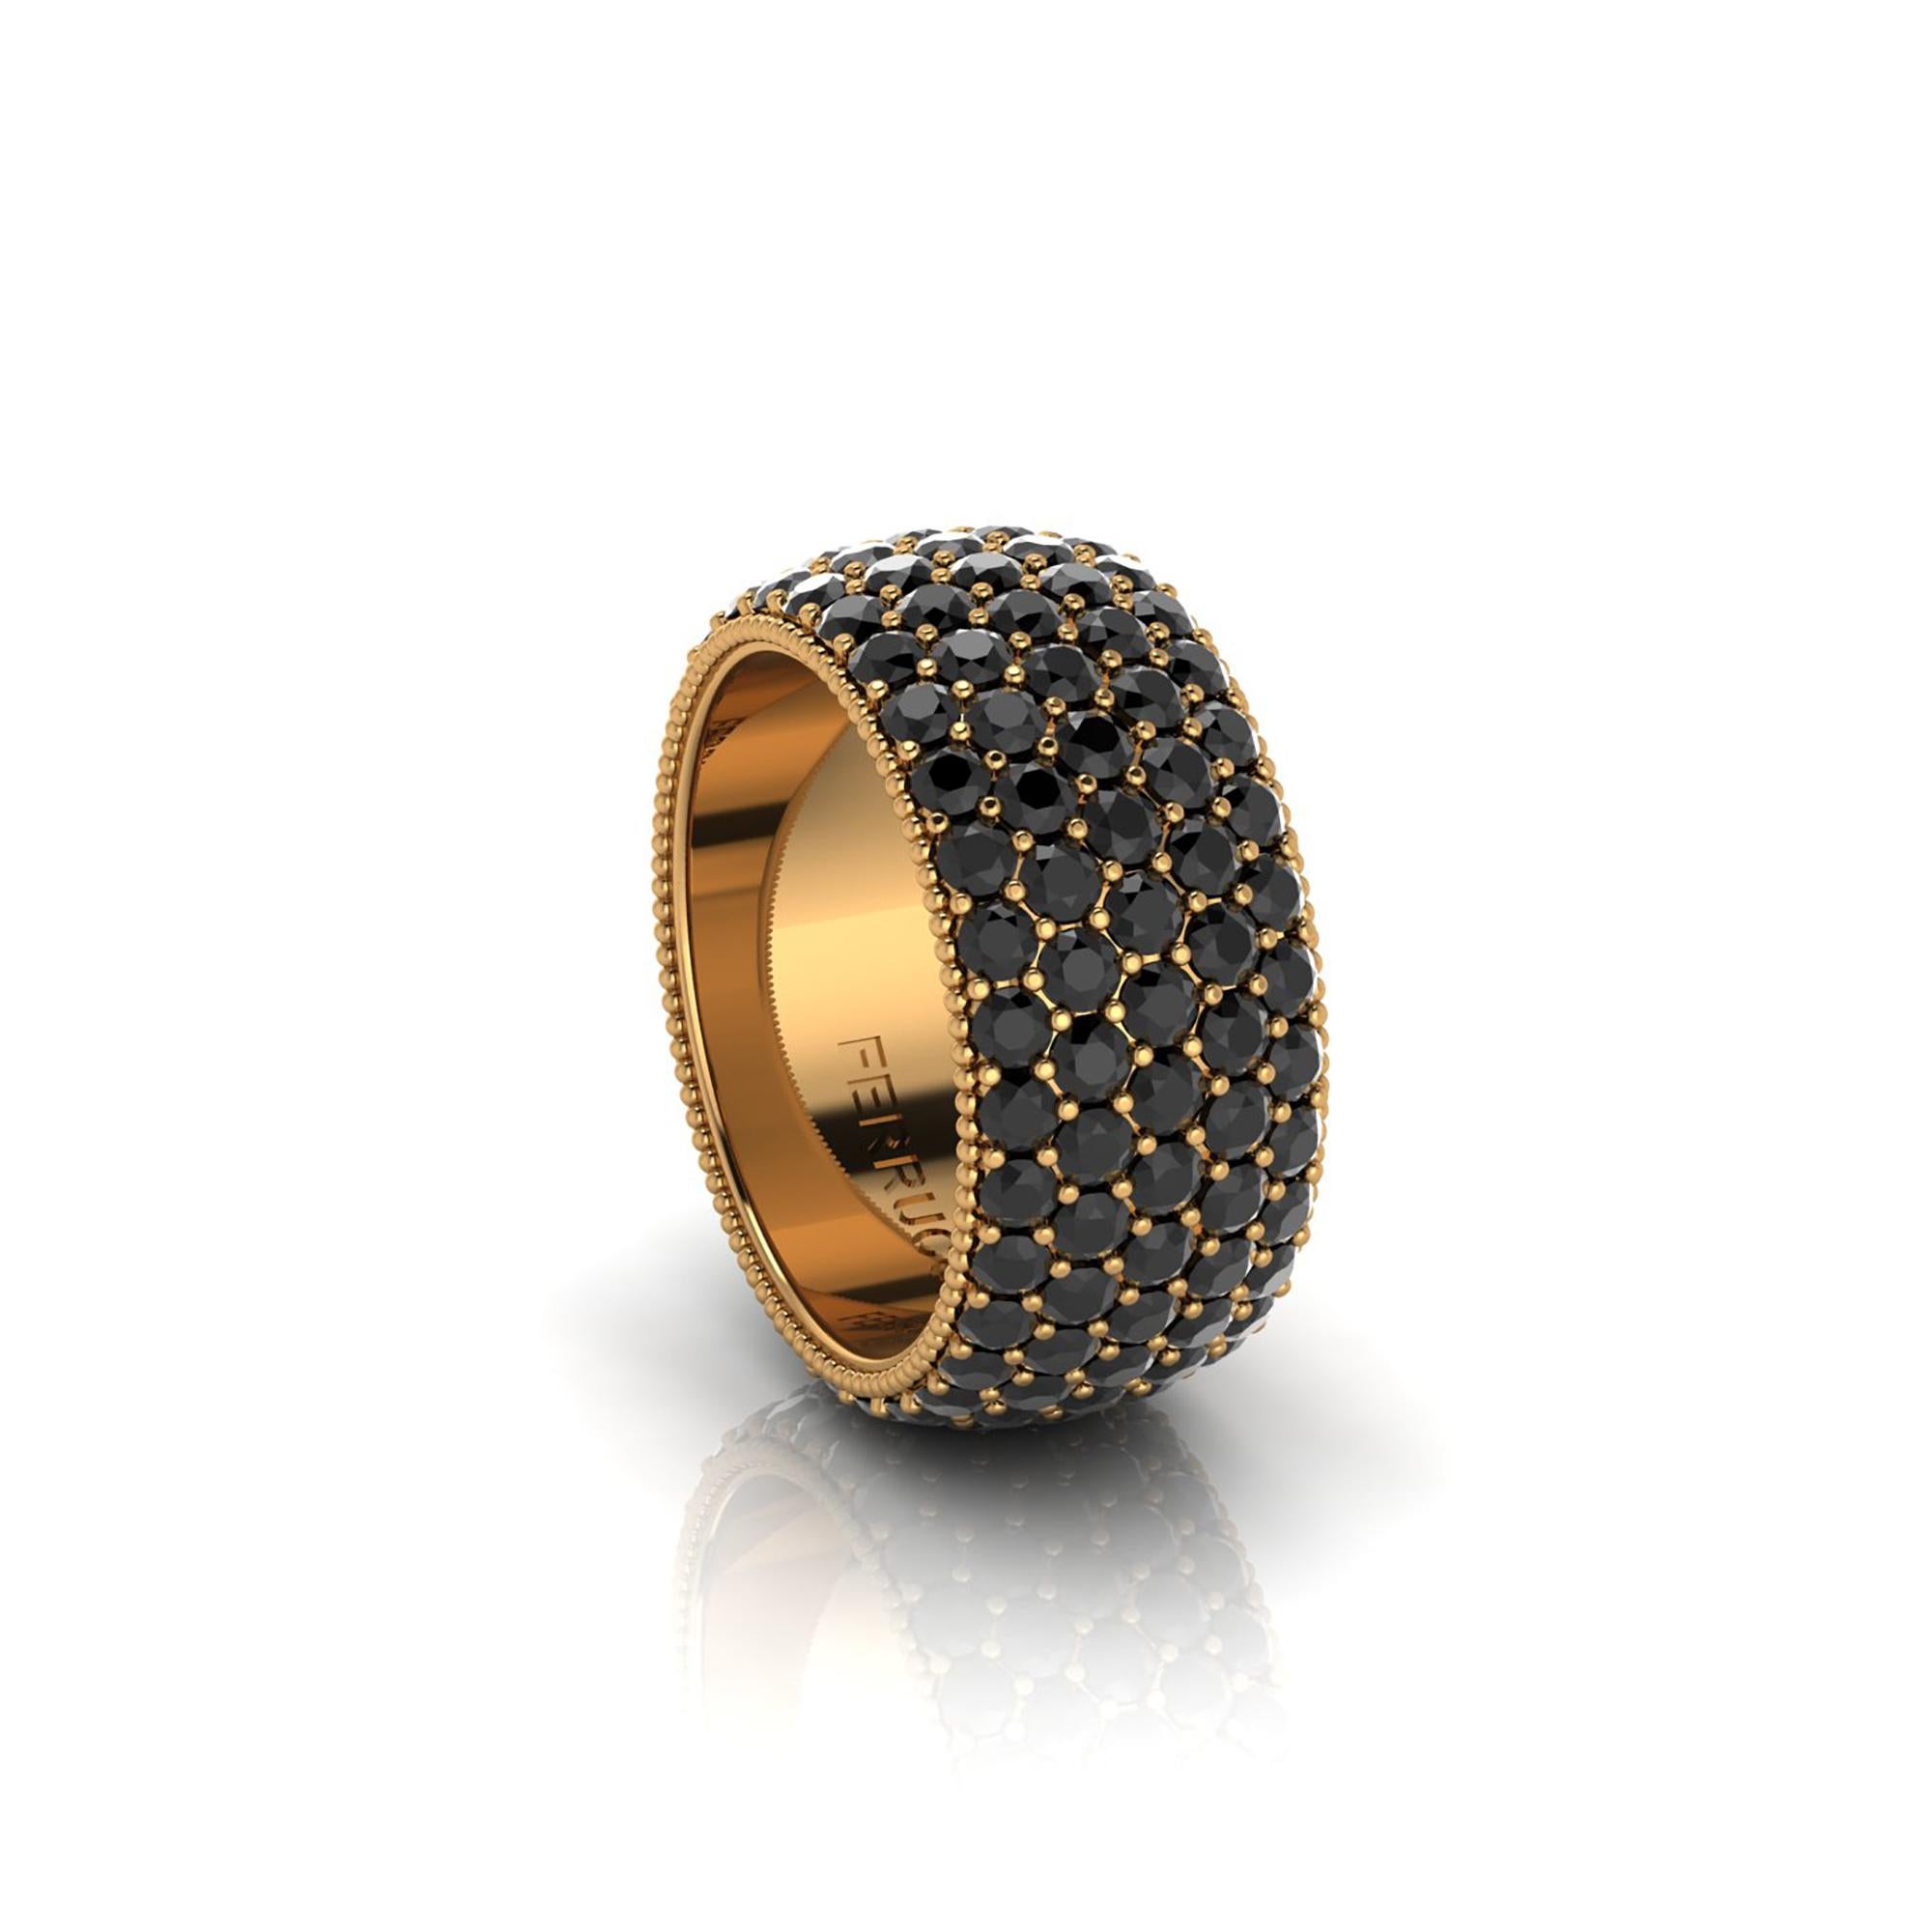 Breiter, leicht kuppelförmiger Ring mit Diamanten in Pflasterung, eine Umhüllung aus funkelnden  schwarze Diamanten mit einem ungefähren Gesamtkaratgewicht von 4,70 Karat, die in New York City von Hand gefertigt wurden von  Italienischer